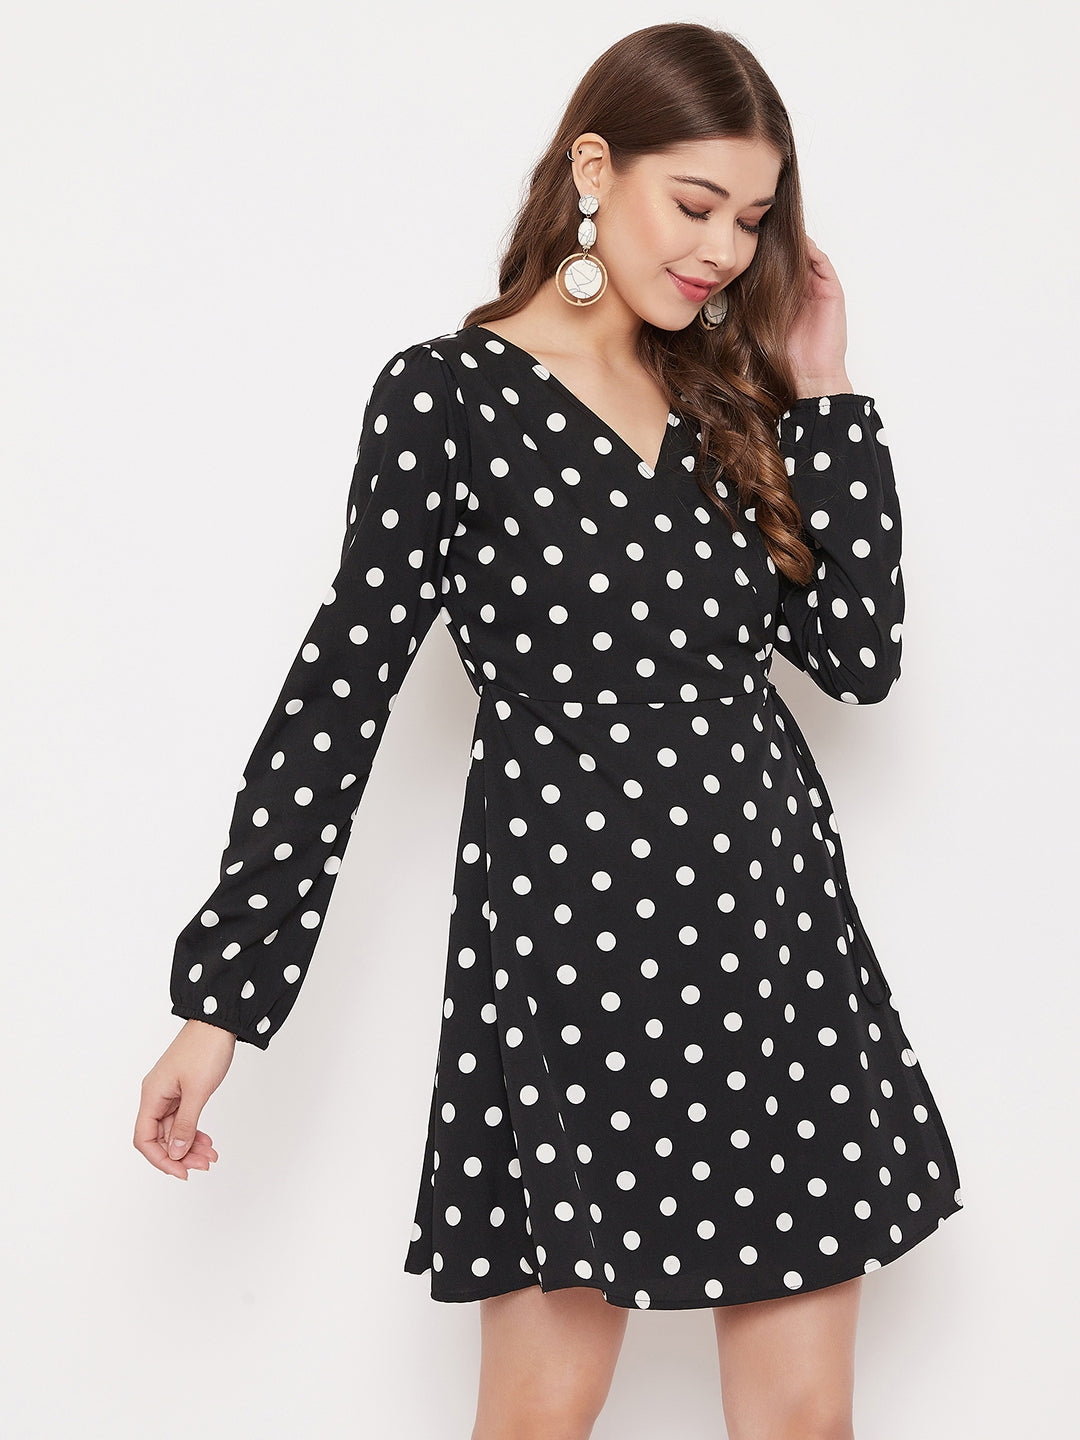 Berrylush Women Black & White Polka Dot Printed Wrap Mini Dress